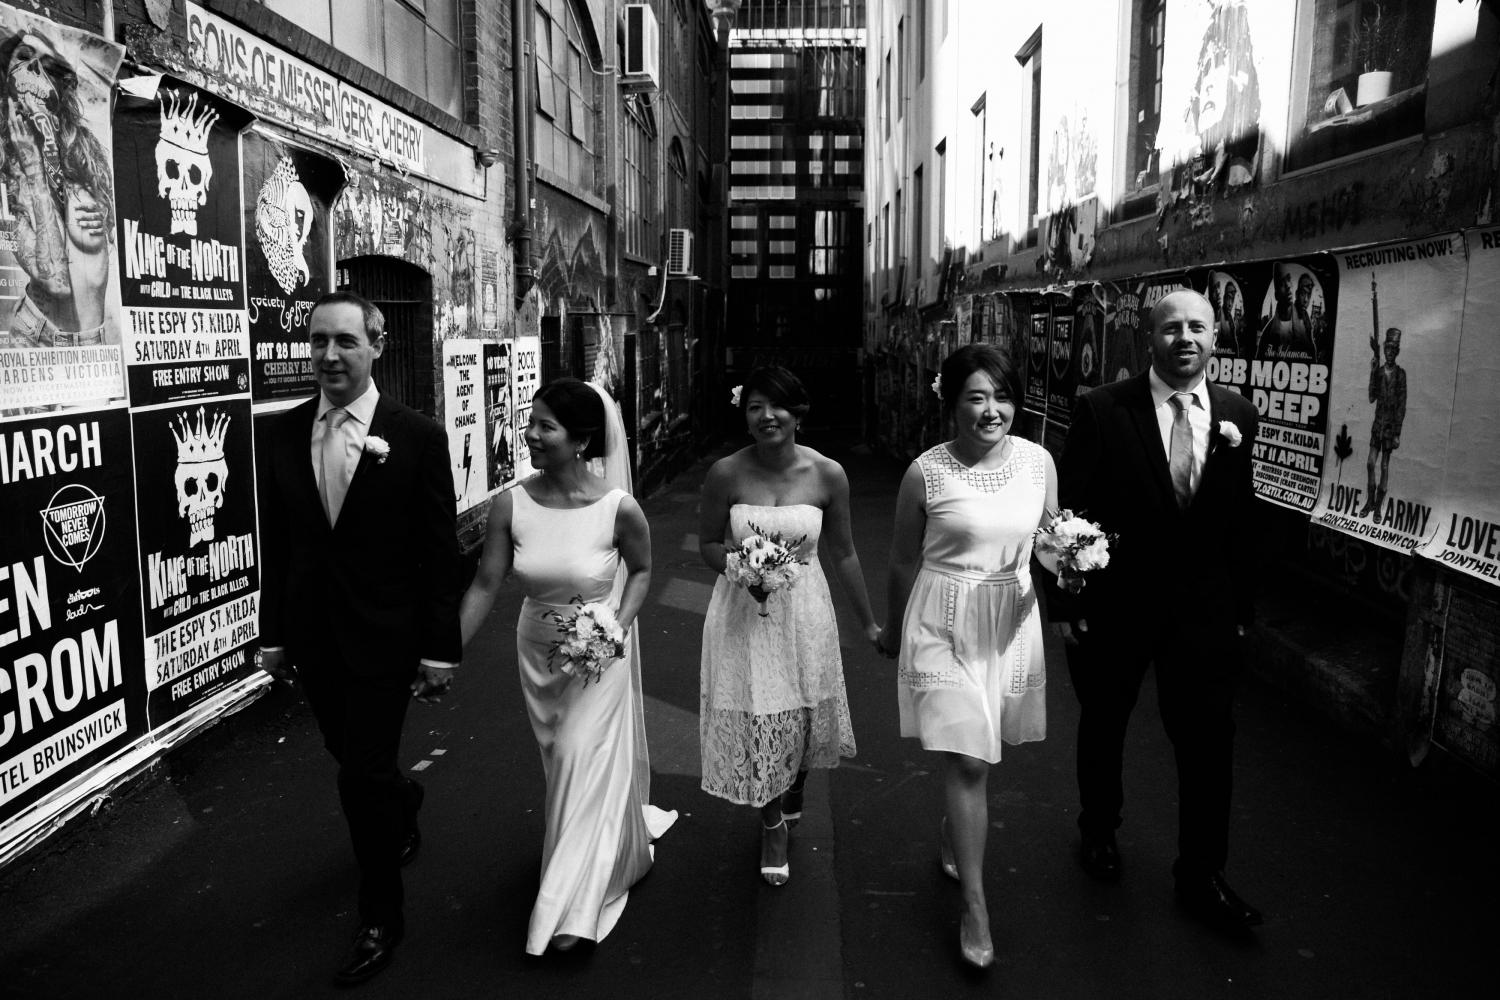 Grand Hyatt Melbourne Wedding